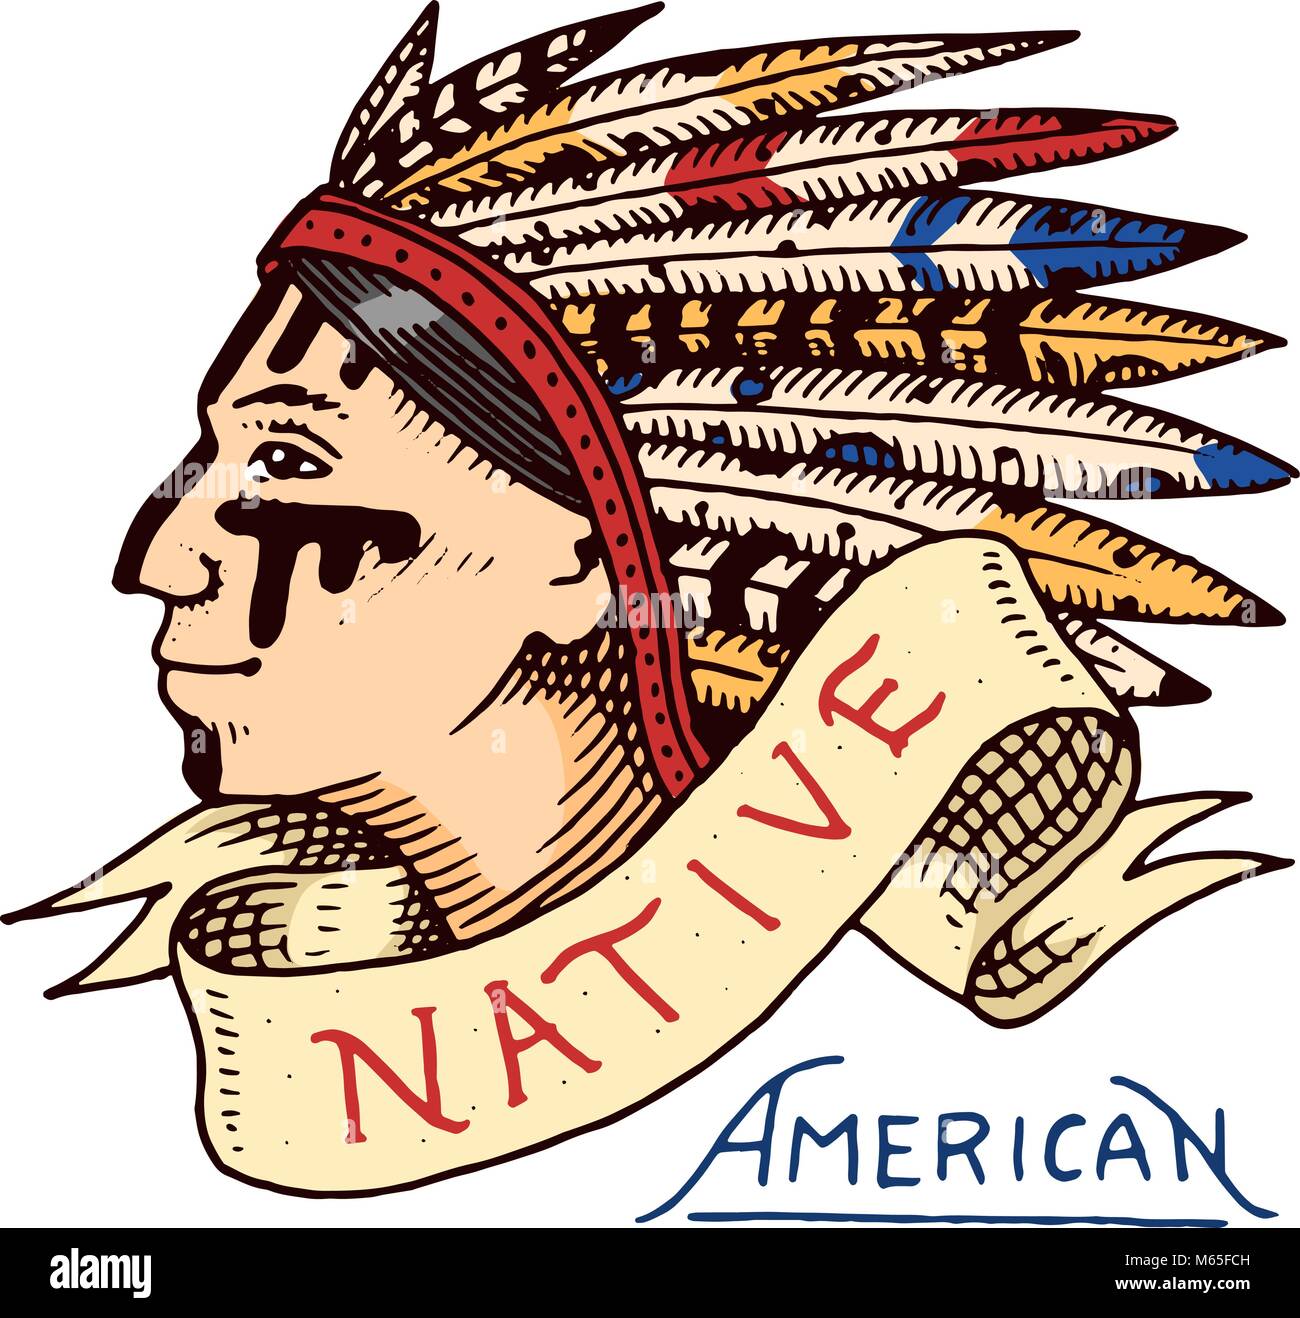 Native American. vieille peau rouge indien. Étiquette et badge. cherokee ou apache, chef traditionnel. gravé à la main dans de vieux croquis. Illustration de Vecteur